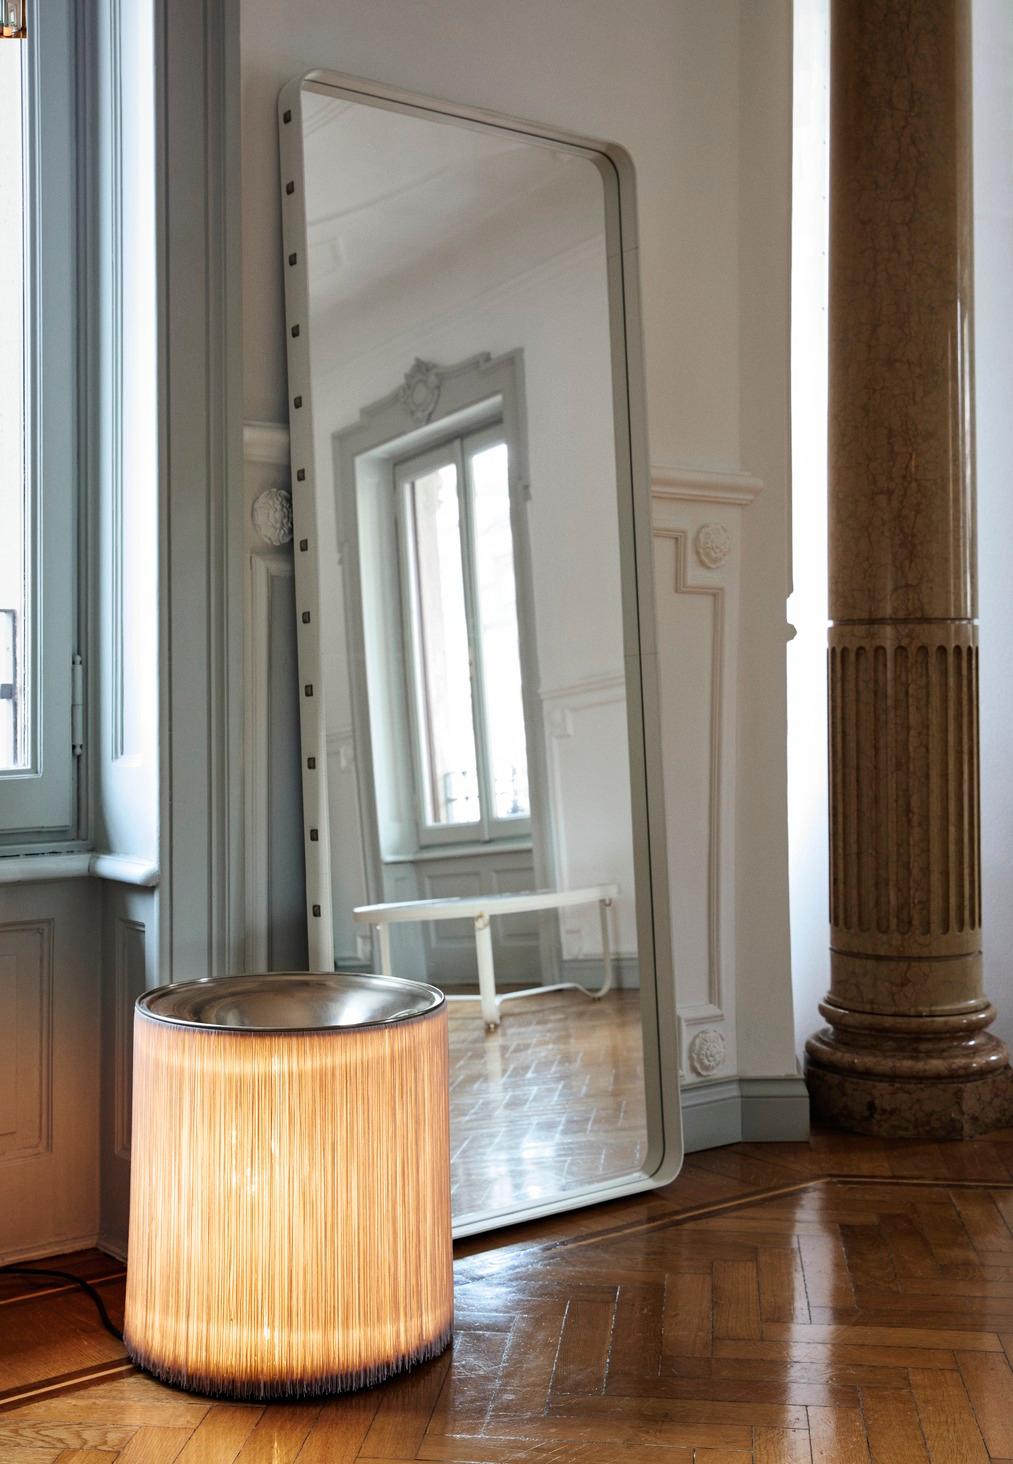 Grand miroir rectangulaire de Jacques Adnet en cuir crème pour Gubi.

Conçu à l'origine par Jacques/One dans les années 1950, ce miroir incroyablement raffiné est réalisé en cuir aniline noir de haute qualité et orné de rivets en laiton bruni sur